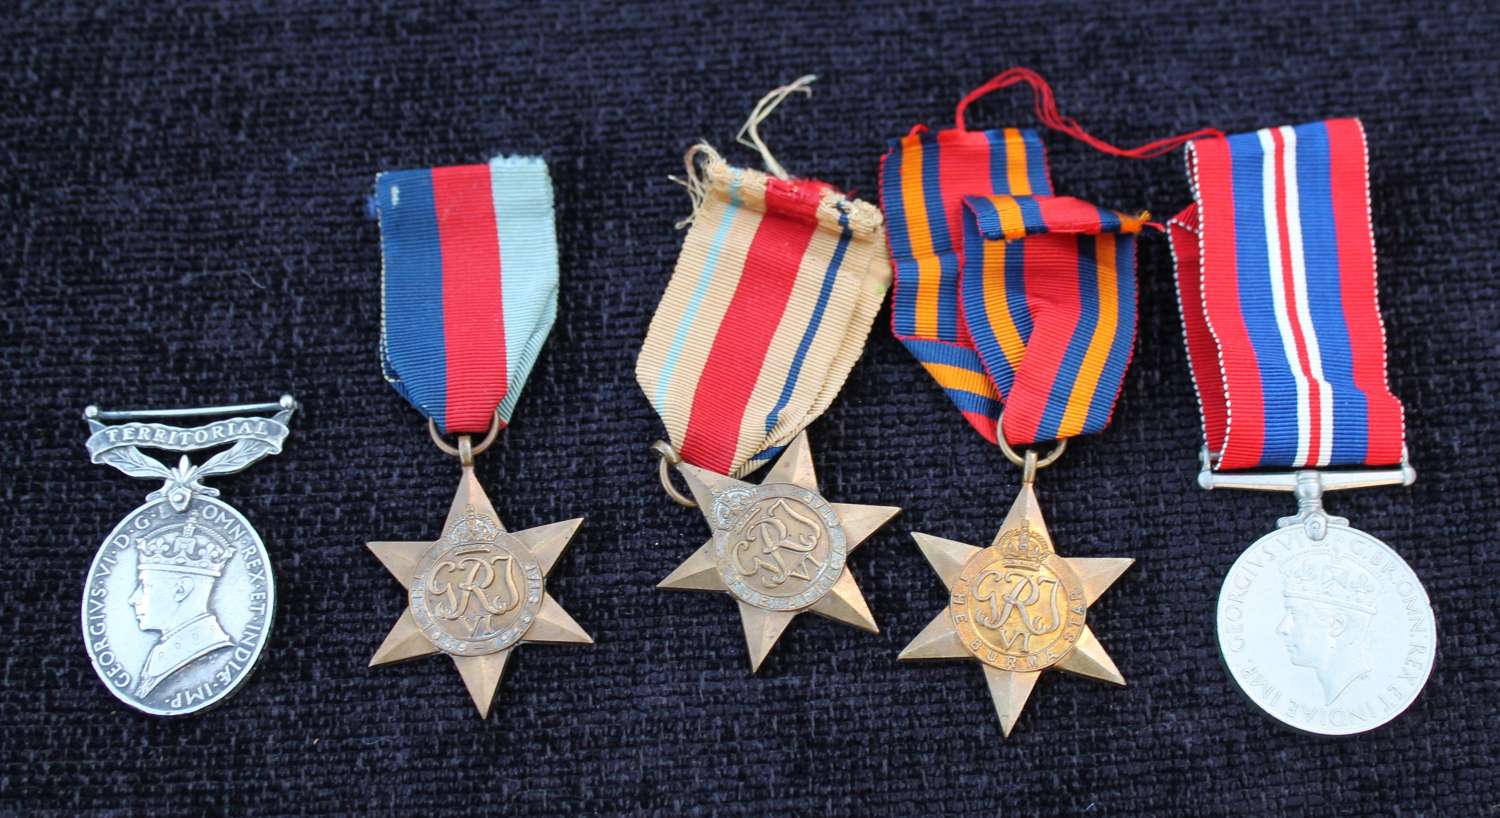 Burma Star Territorial Medal Group